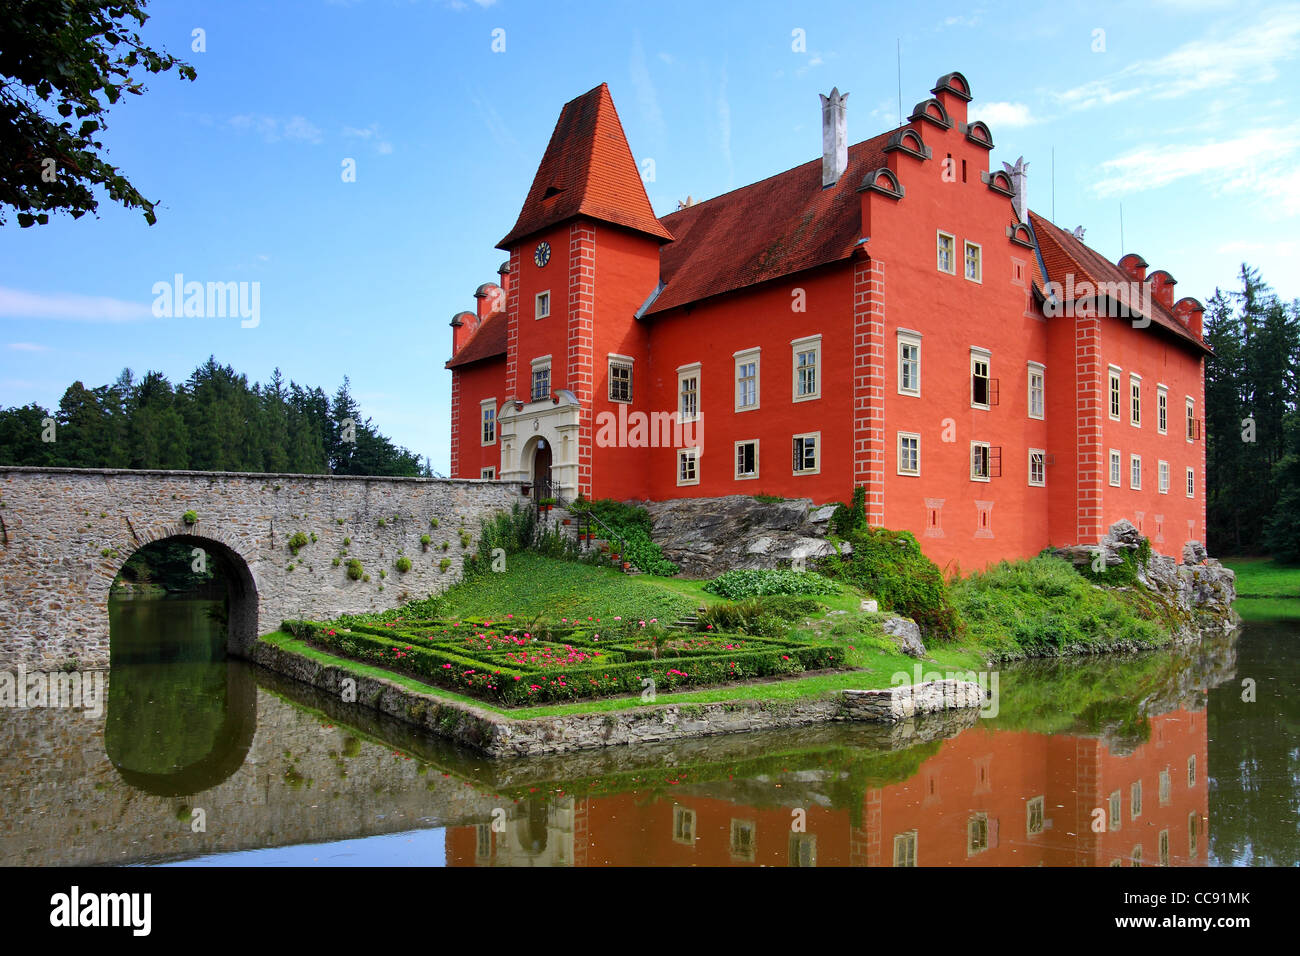 Benvenuti in Repubblica ceca - ha notato il castello rosso Cervena lhota Foto Stock